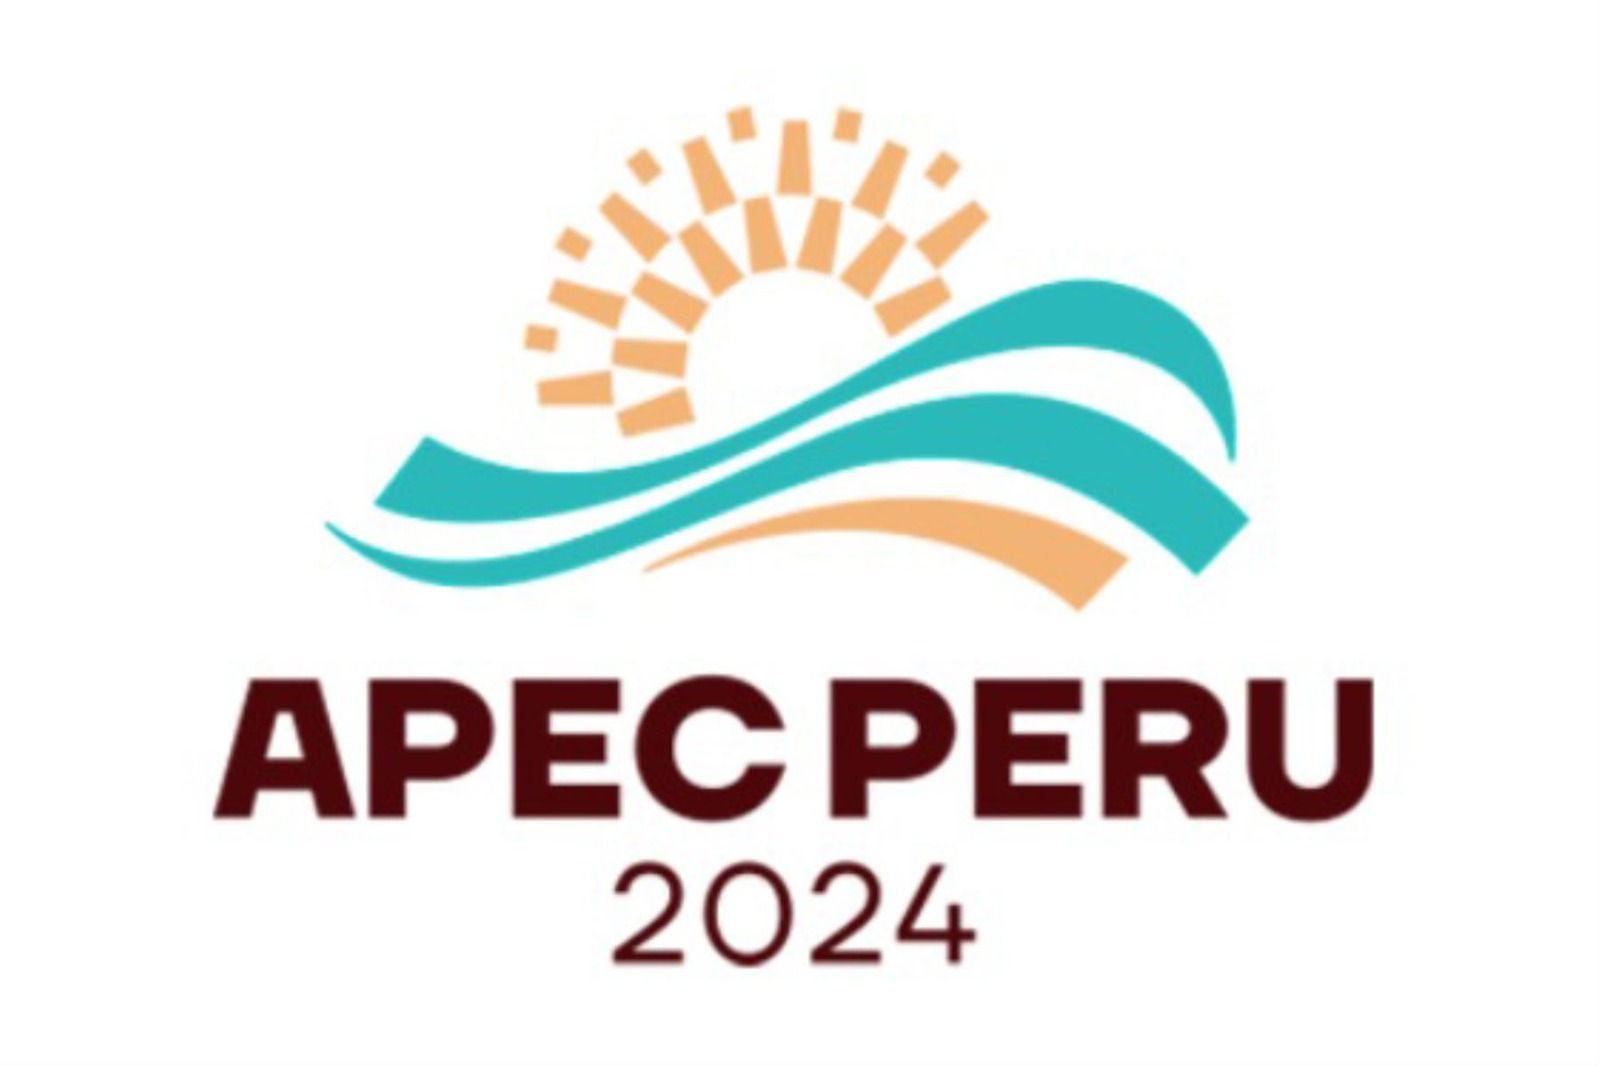 APEC 2024 in Peru ANDINA Peru News Agency